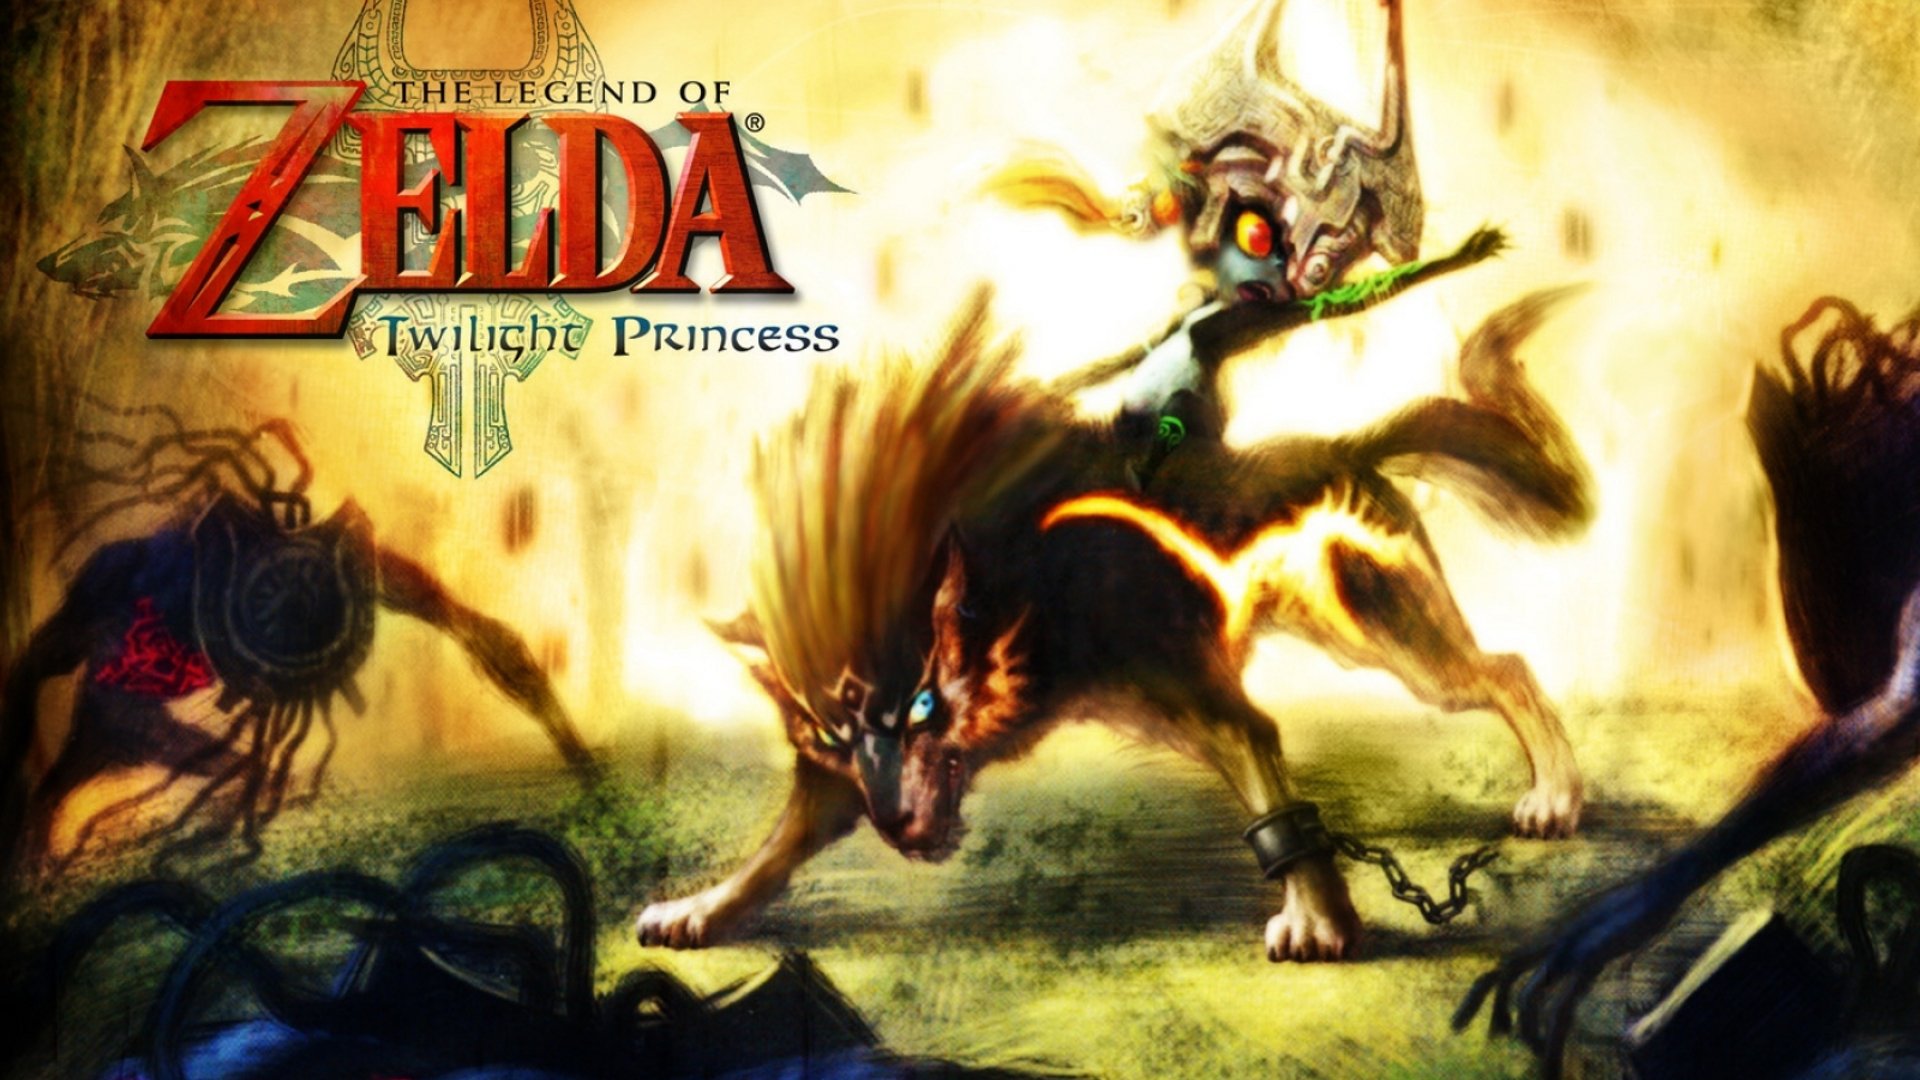 leyenda de zelda twilight princess fondo de pantalla,juego de acción y aventura,demonio,juego de pc,personaje de ficción,cg artwork